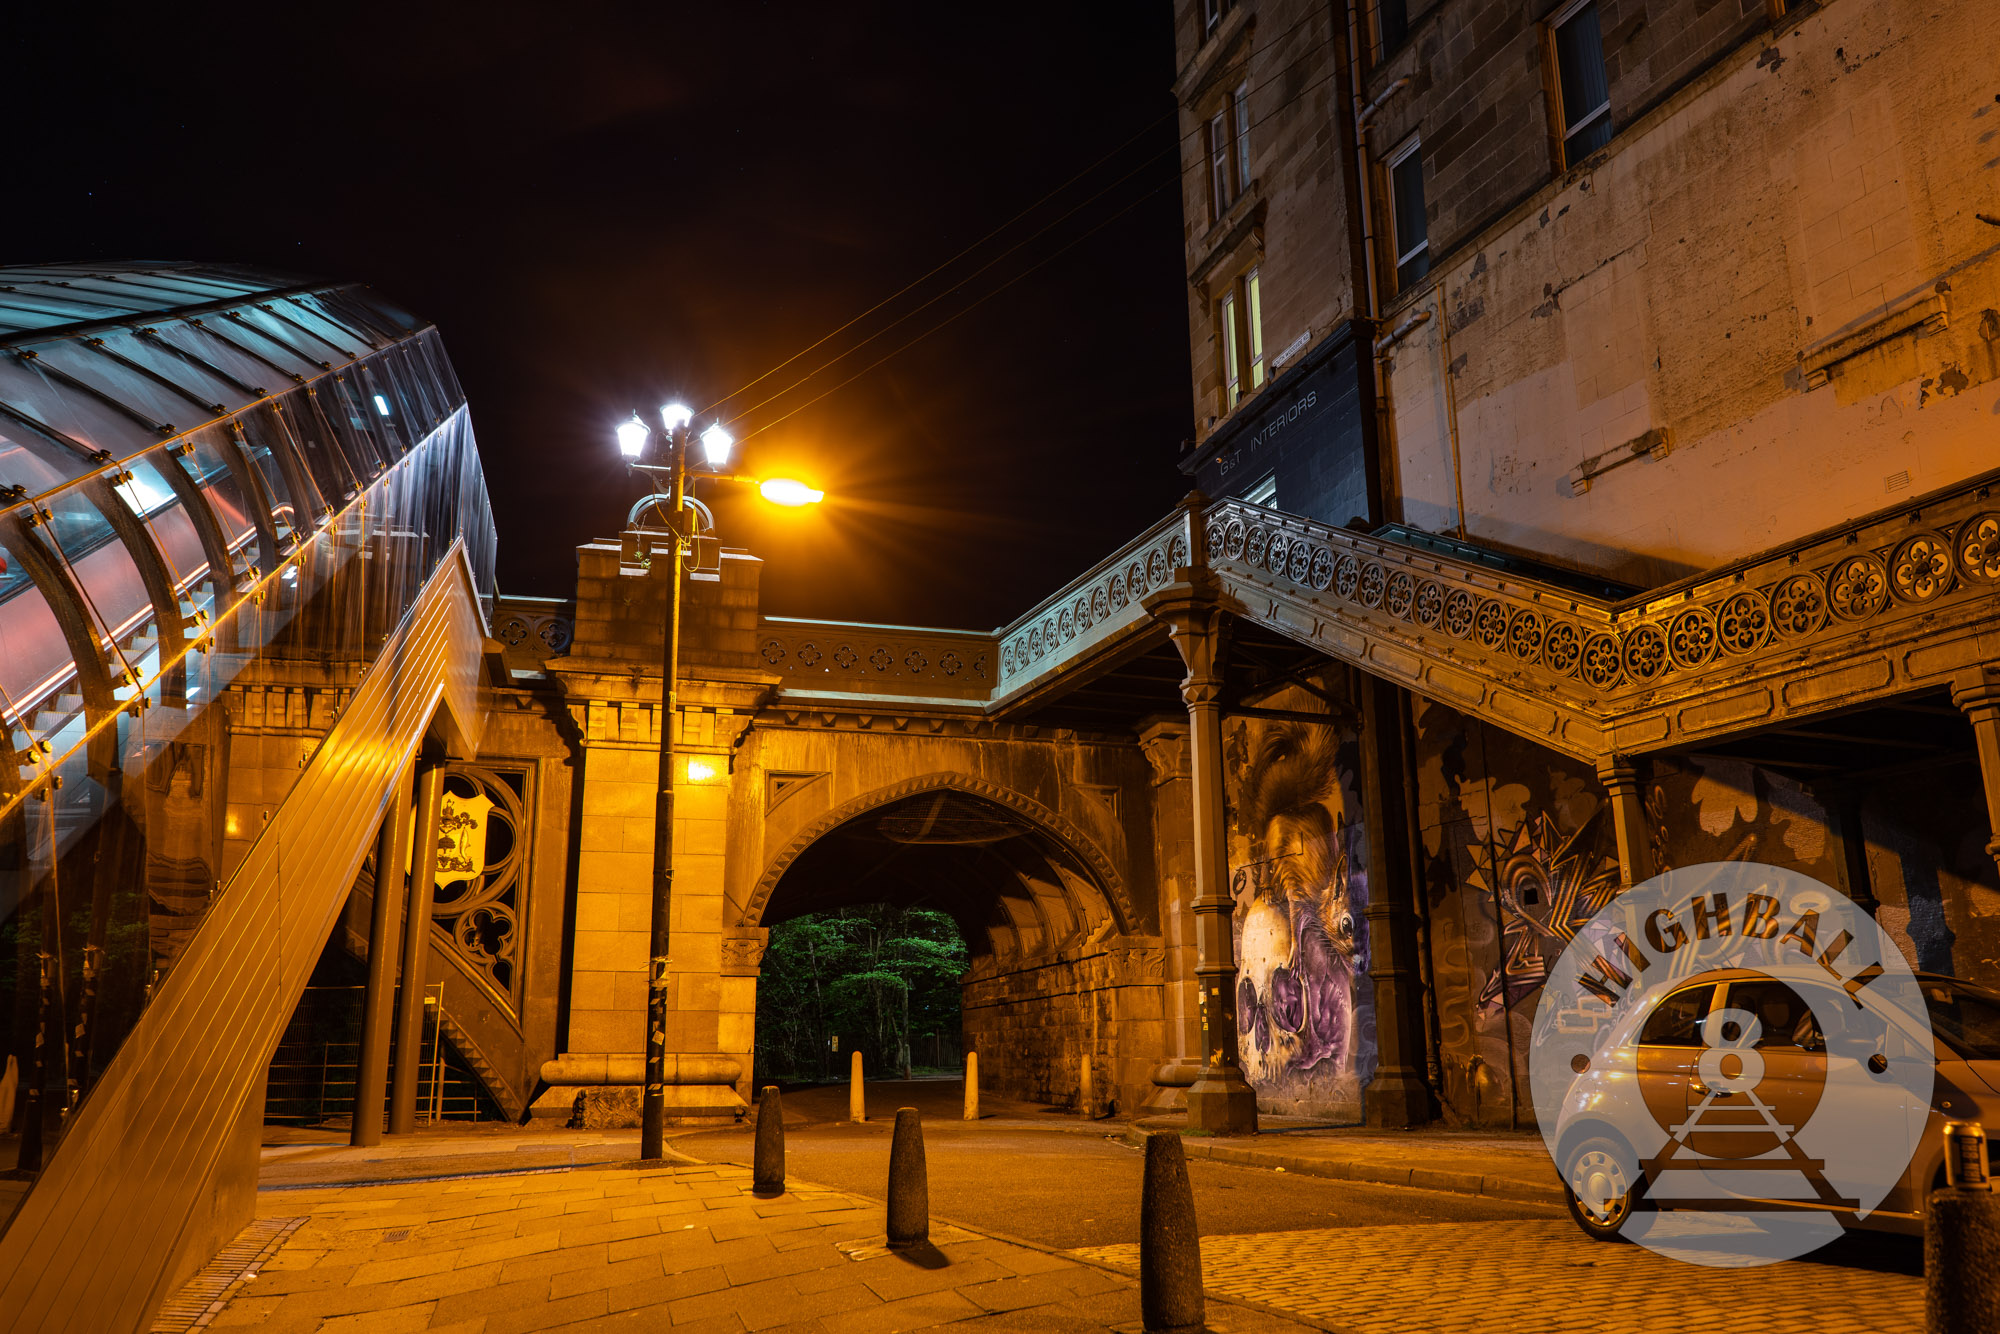 Night scene outside of the Kelvinbridge SPT station, Kelvinbridge, Glasgow, Scotland, UK, 2018.